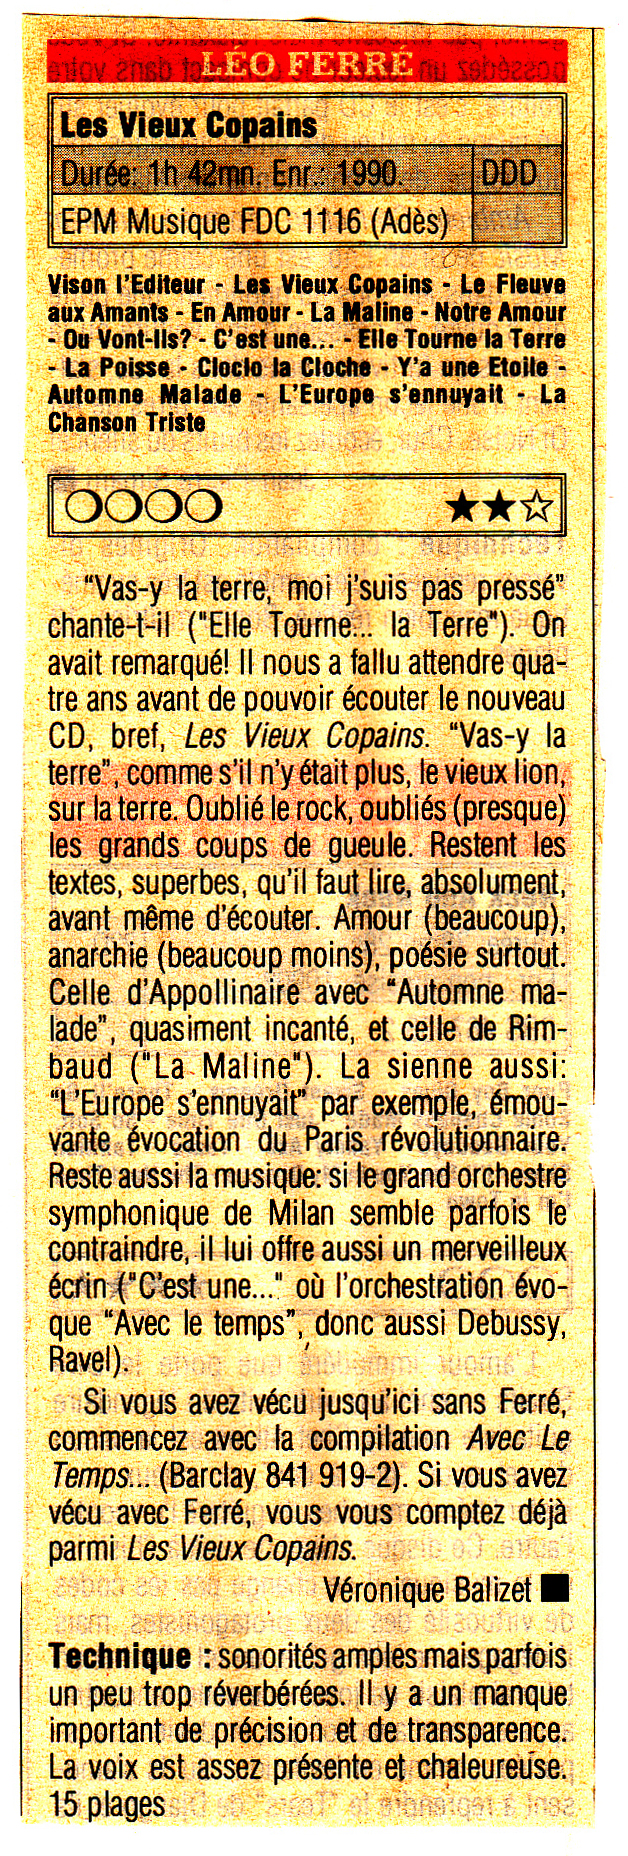 Léo Ferré - Compact, mensuel de janvier 1991